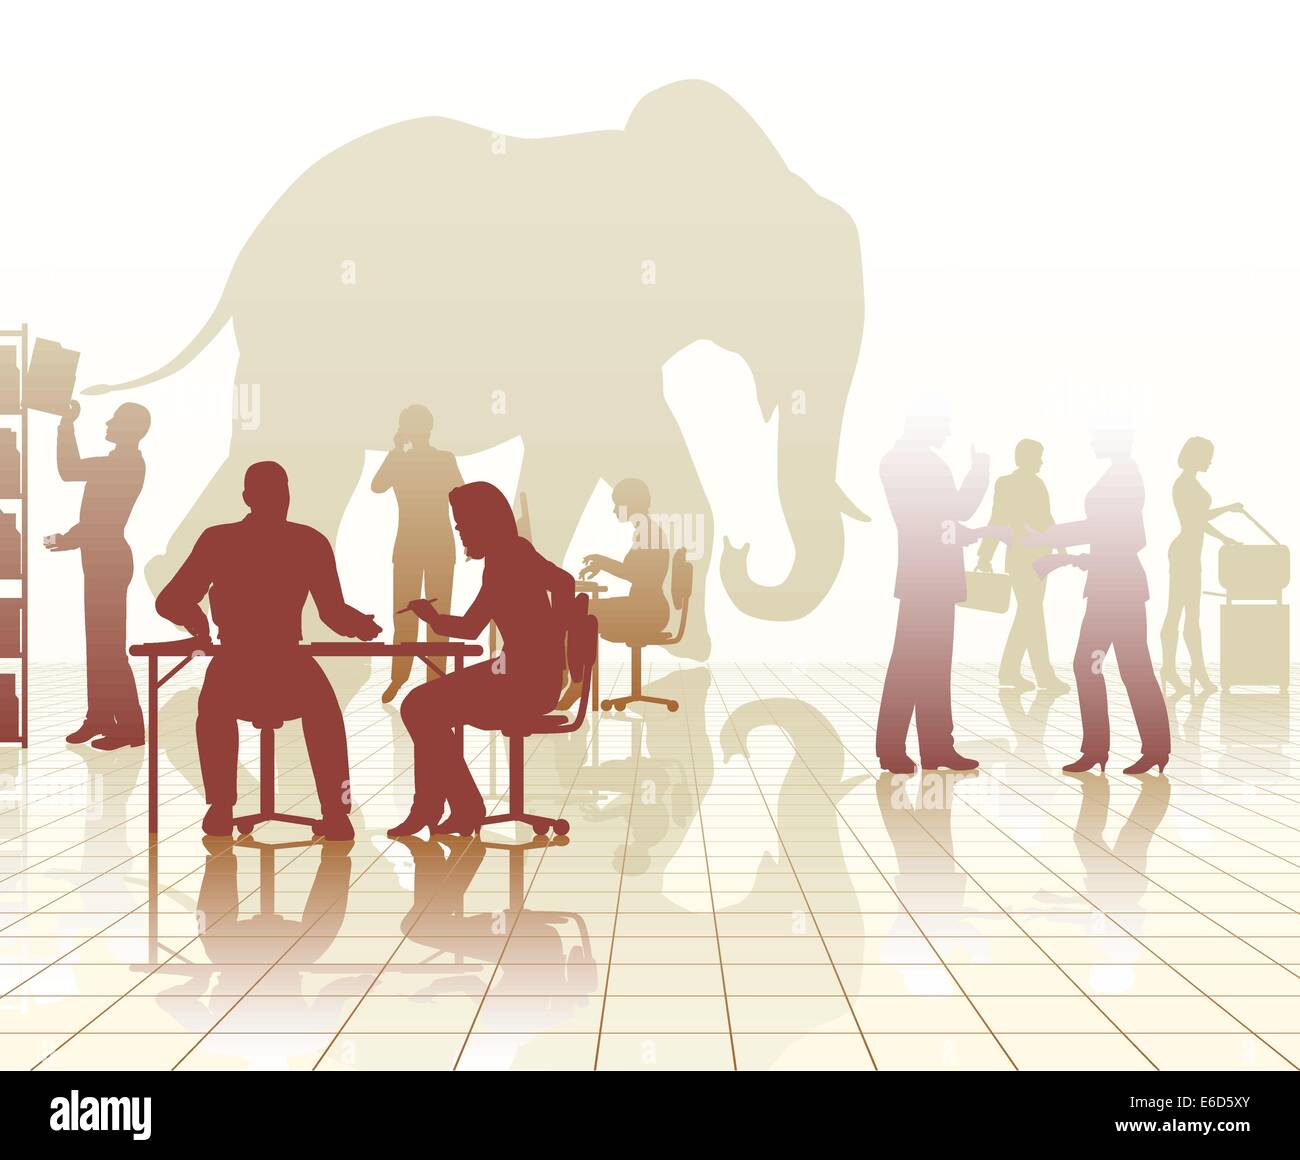 Silhouettes vecteur modifiable d'un éléphant dans un bureau occupé par des réflexions de personnes Illustration de Vecteur